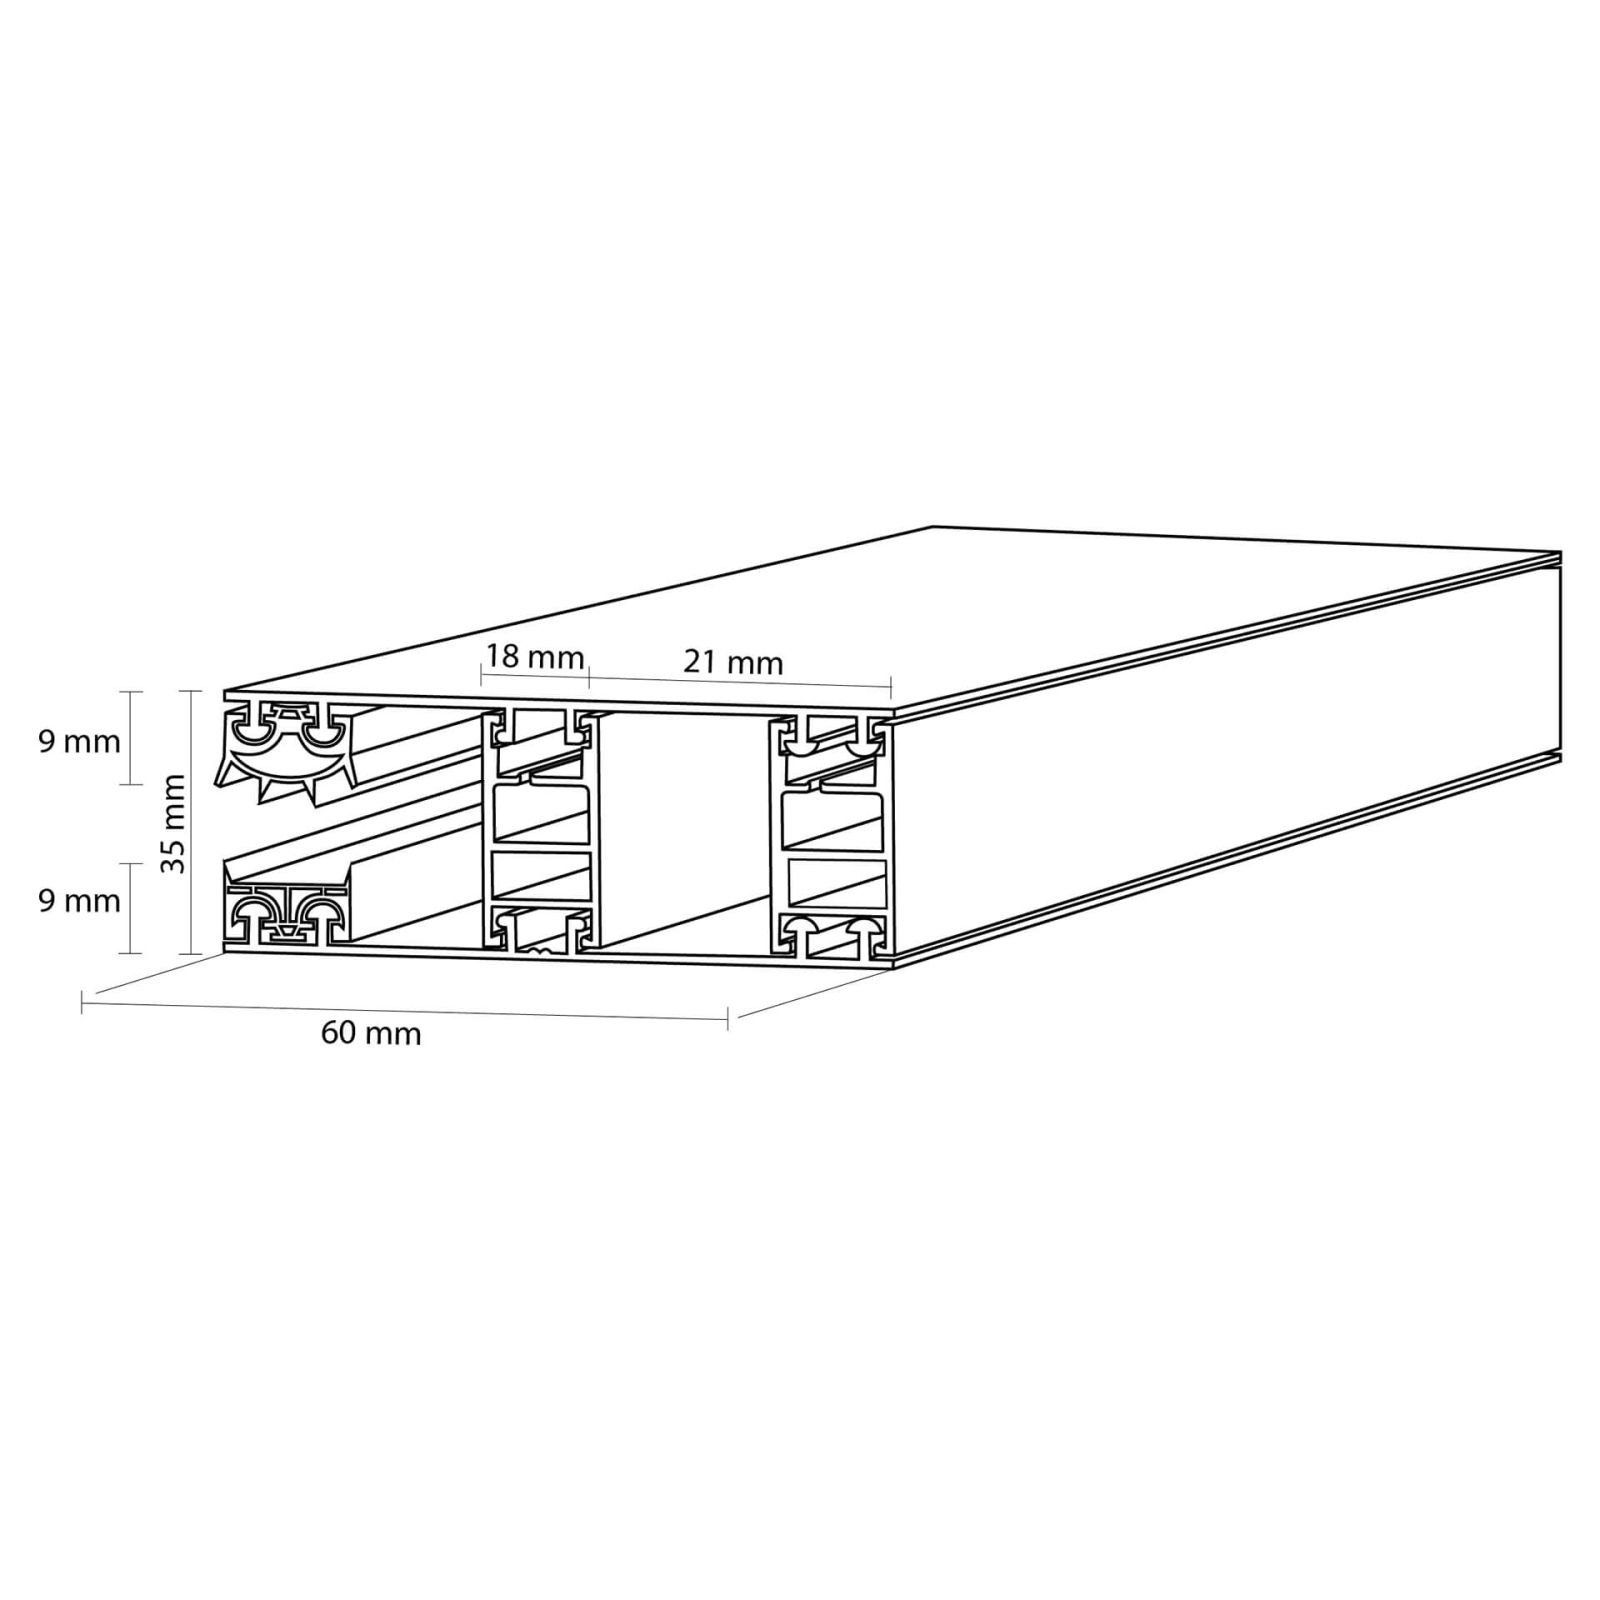 Polycarbonat Stegplatte | 16 mm | Profil Mendiger | Sparpaket | Plattenbreite 1200 mm | Opal Weiß | Breite 3,75 m | Länge 2,00 m #9